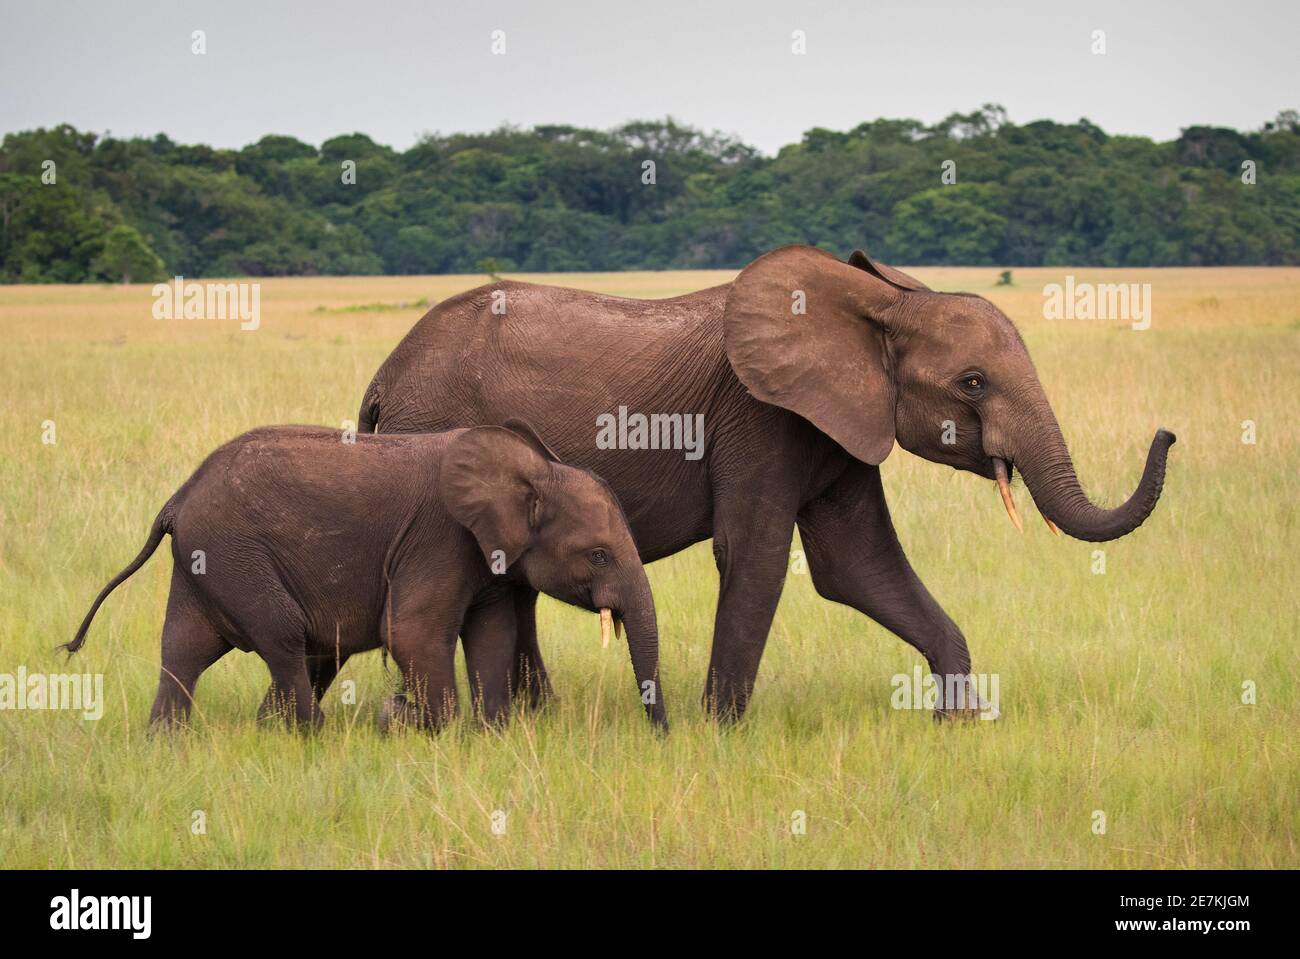 Mère et jeune éléphant de forêt africain (Loxodonta cyclotis), Parc national de Loango, Gabon. Banque D'Images